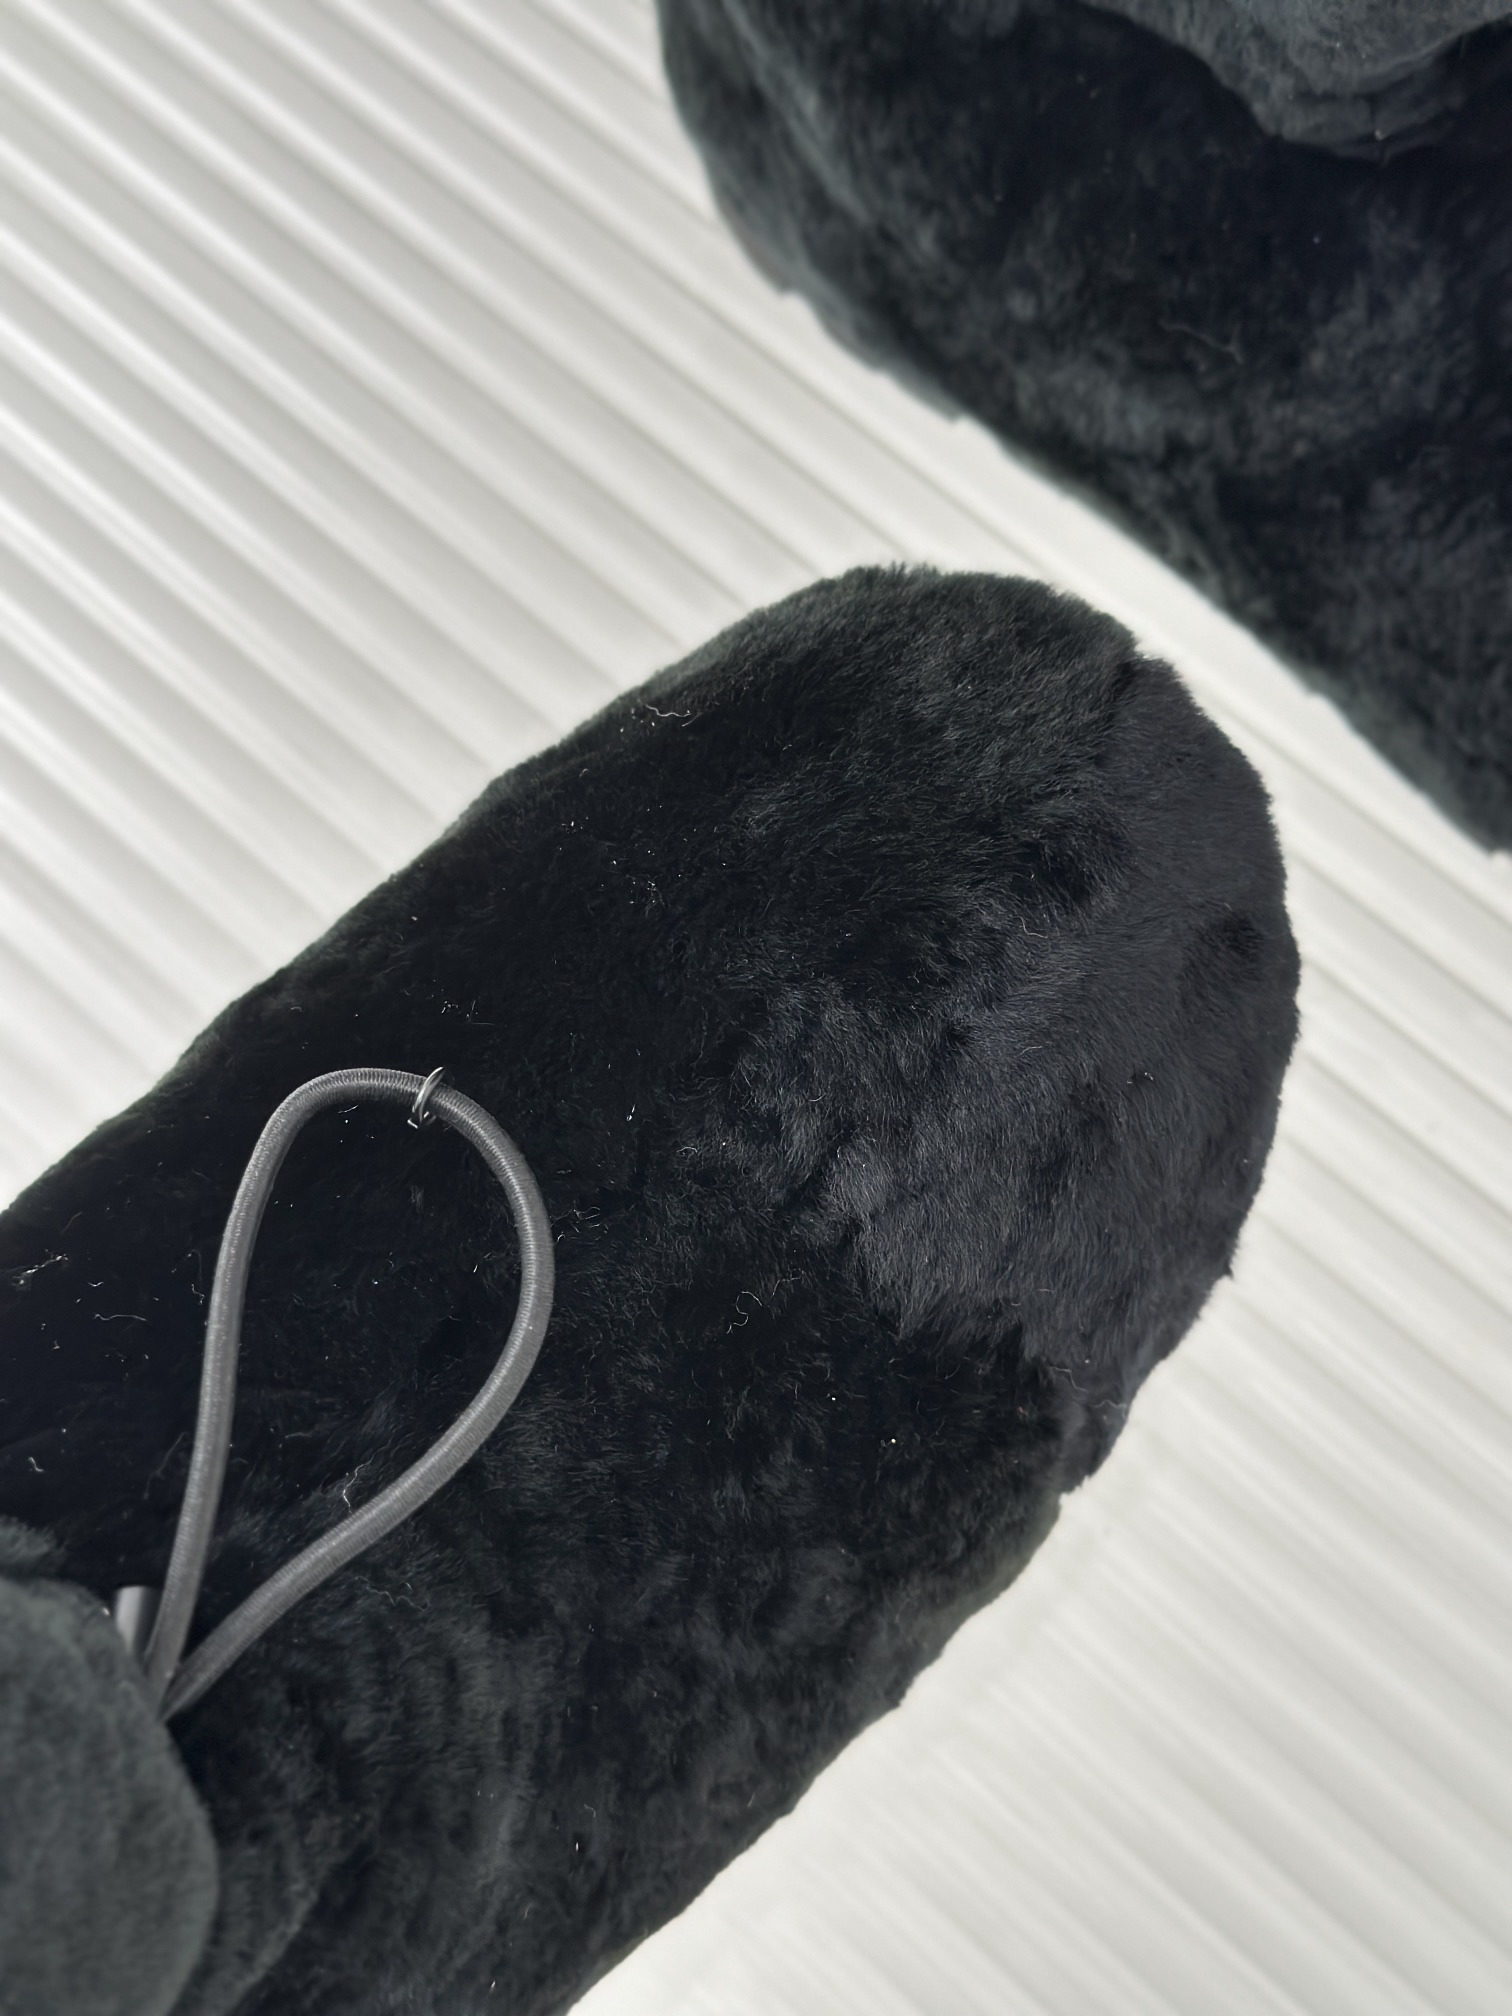 Prad*23S秋冬新品三角标雪地靴材质采用澳洲进口羊皮毛一体原版开模发泡大底码数35-3940/41定